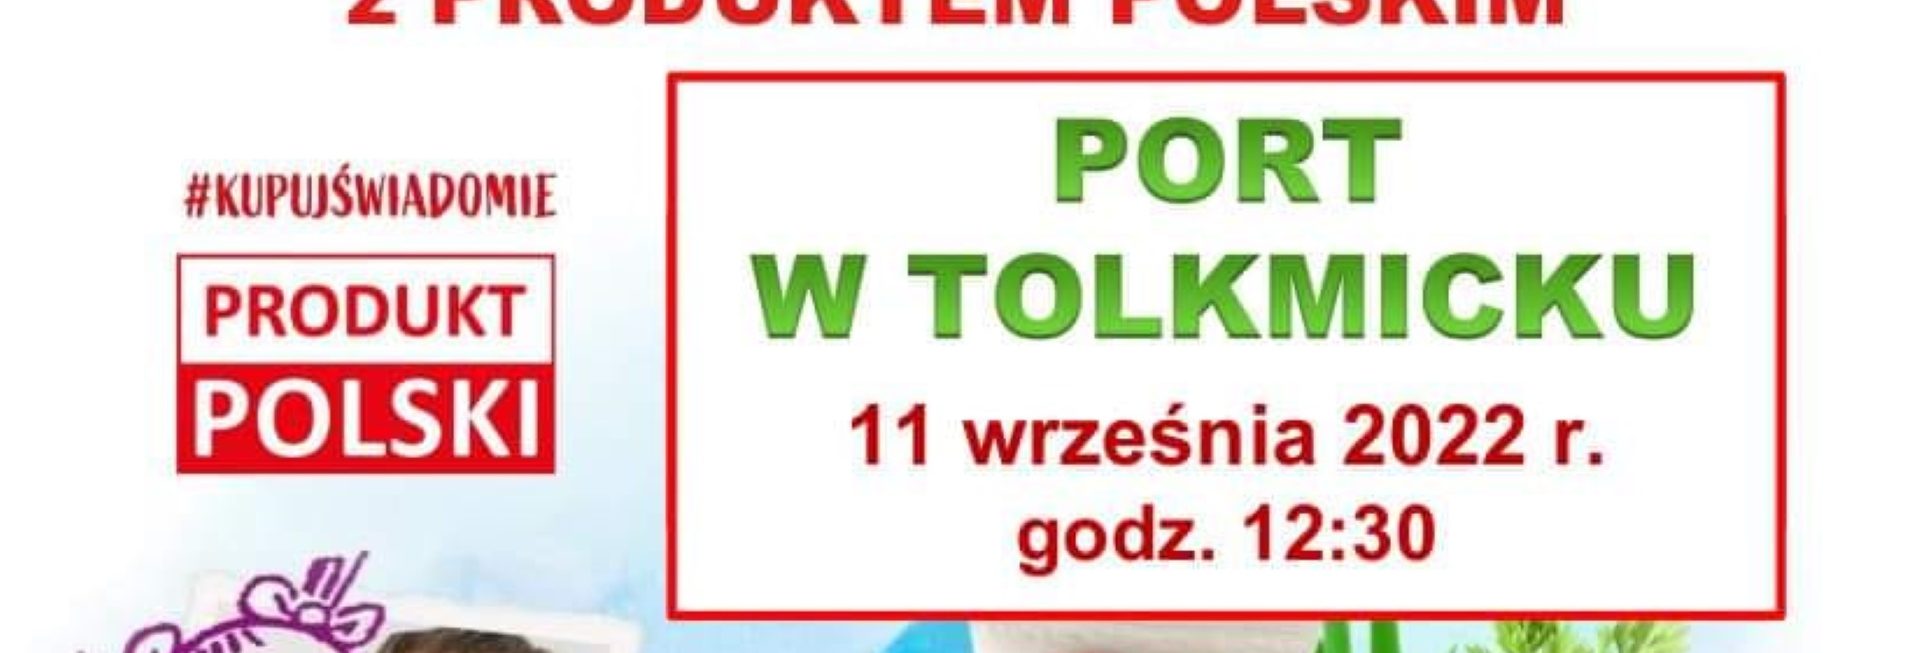 Plakat zapraszający do Tolkmicka na Piknik Rodzinny - Dzień Tolkmickiego Węgorza Tolkmicko 2022.